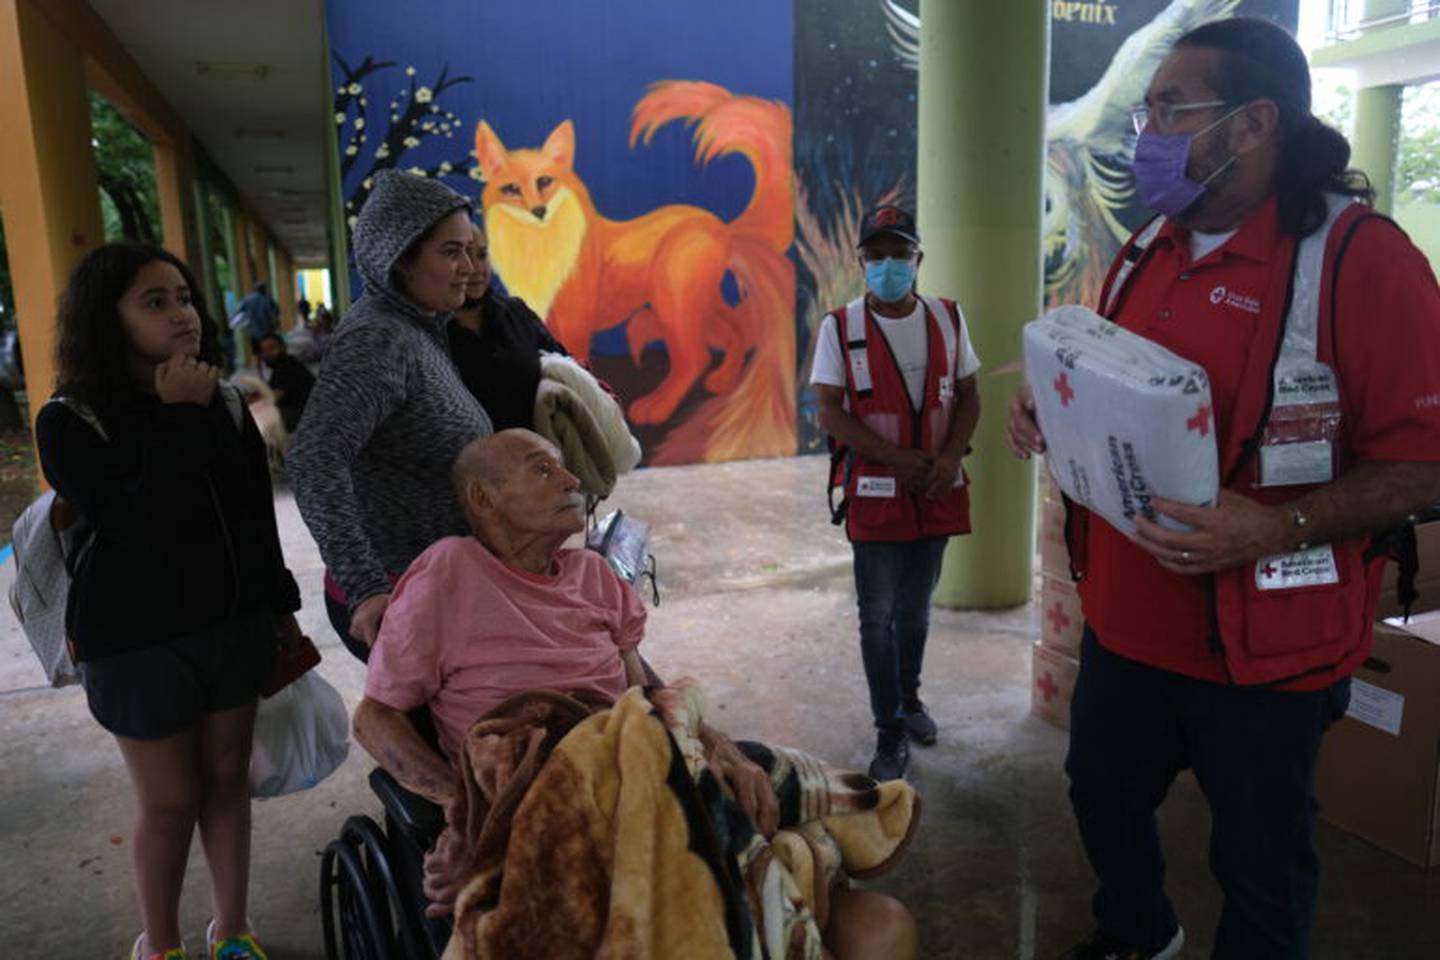 Muchas familias llegaron a los refugios con personas envejecientes con necesidades. 
Foto por Ricardo Arduengo | Centro de Periodismo Investigativo